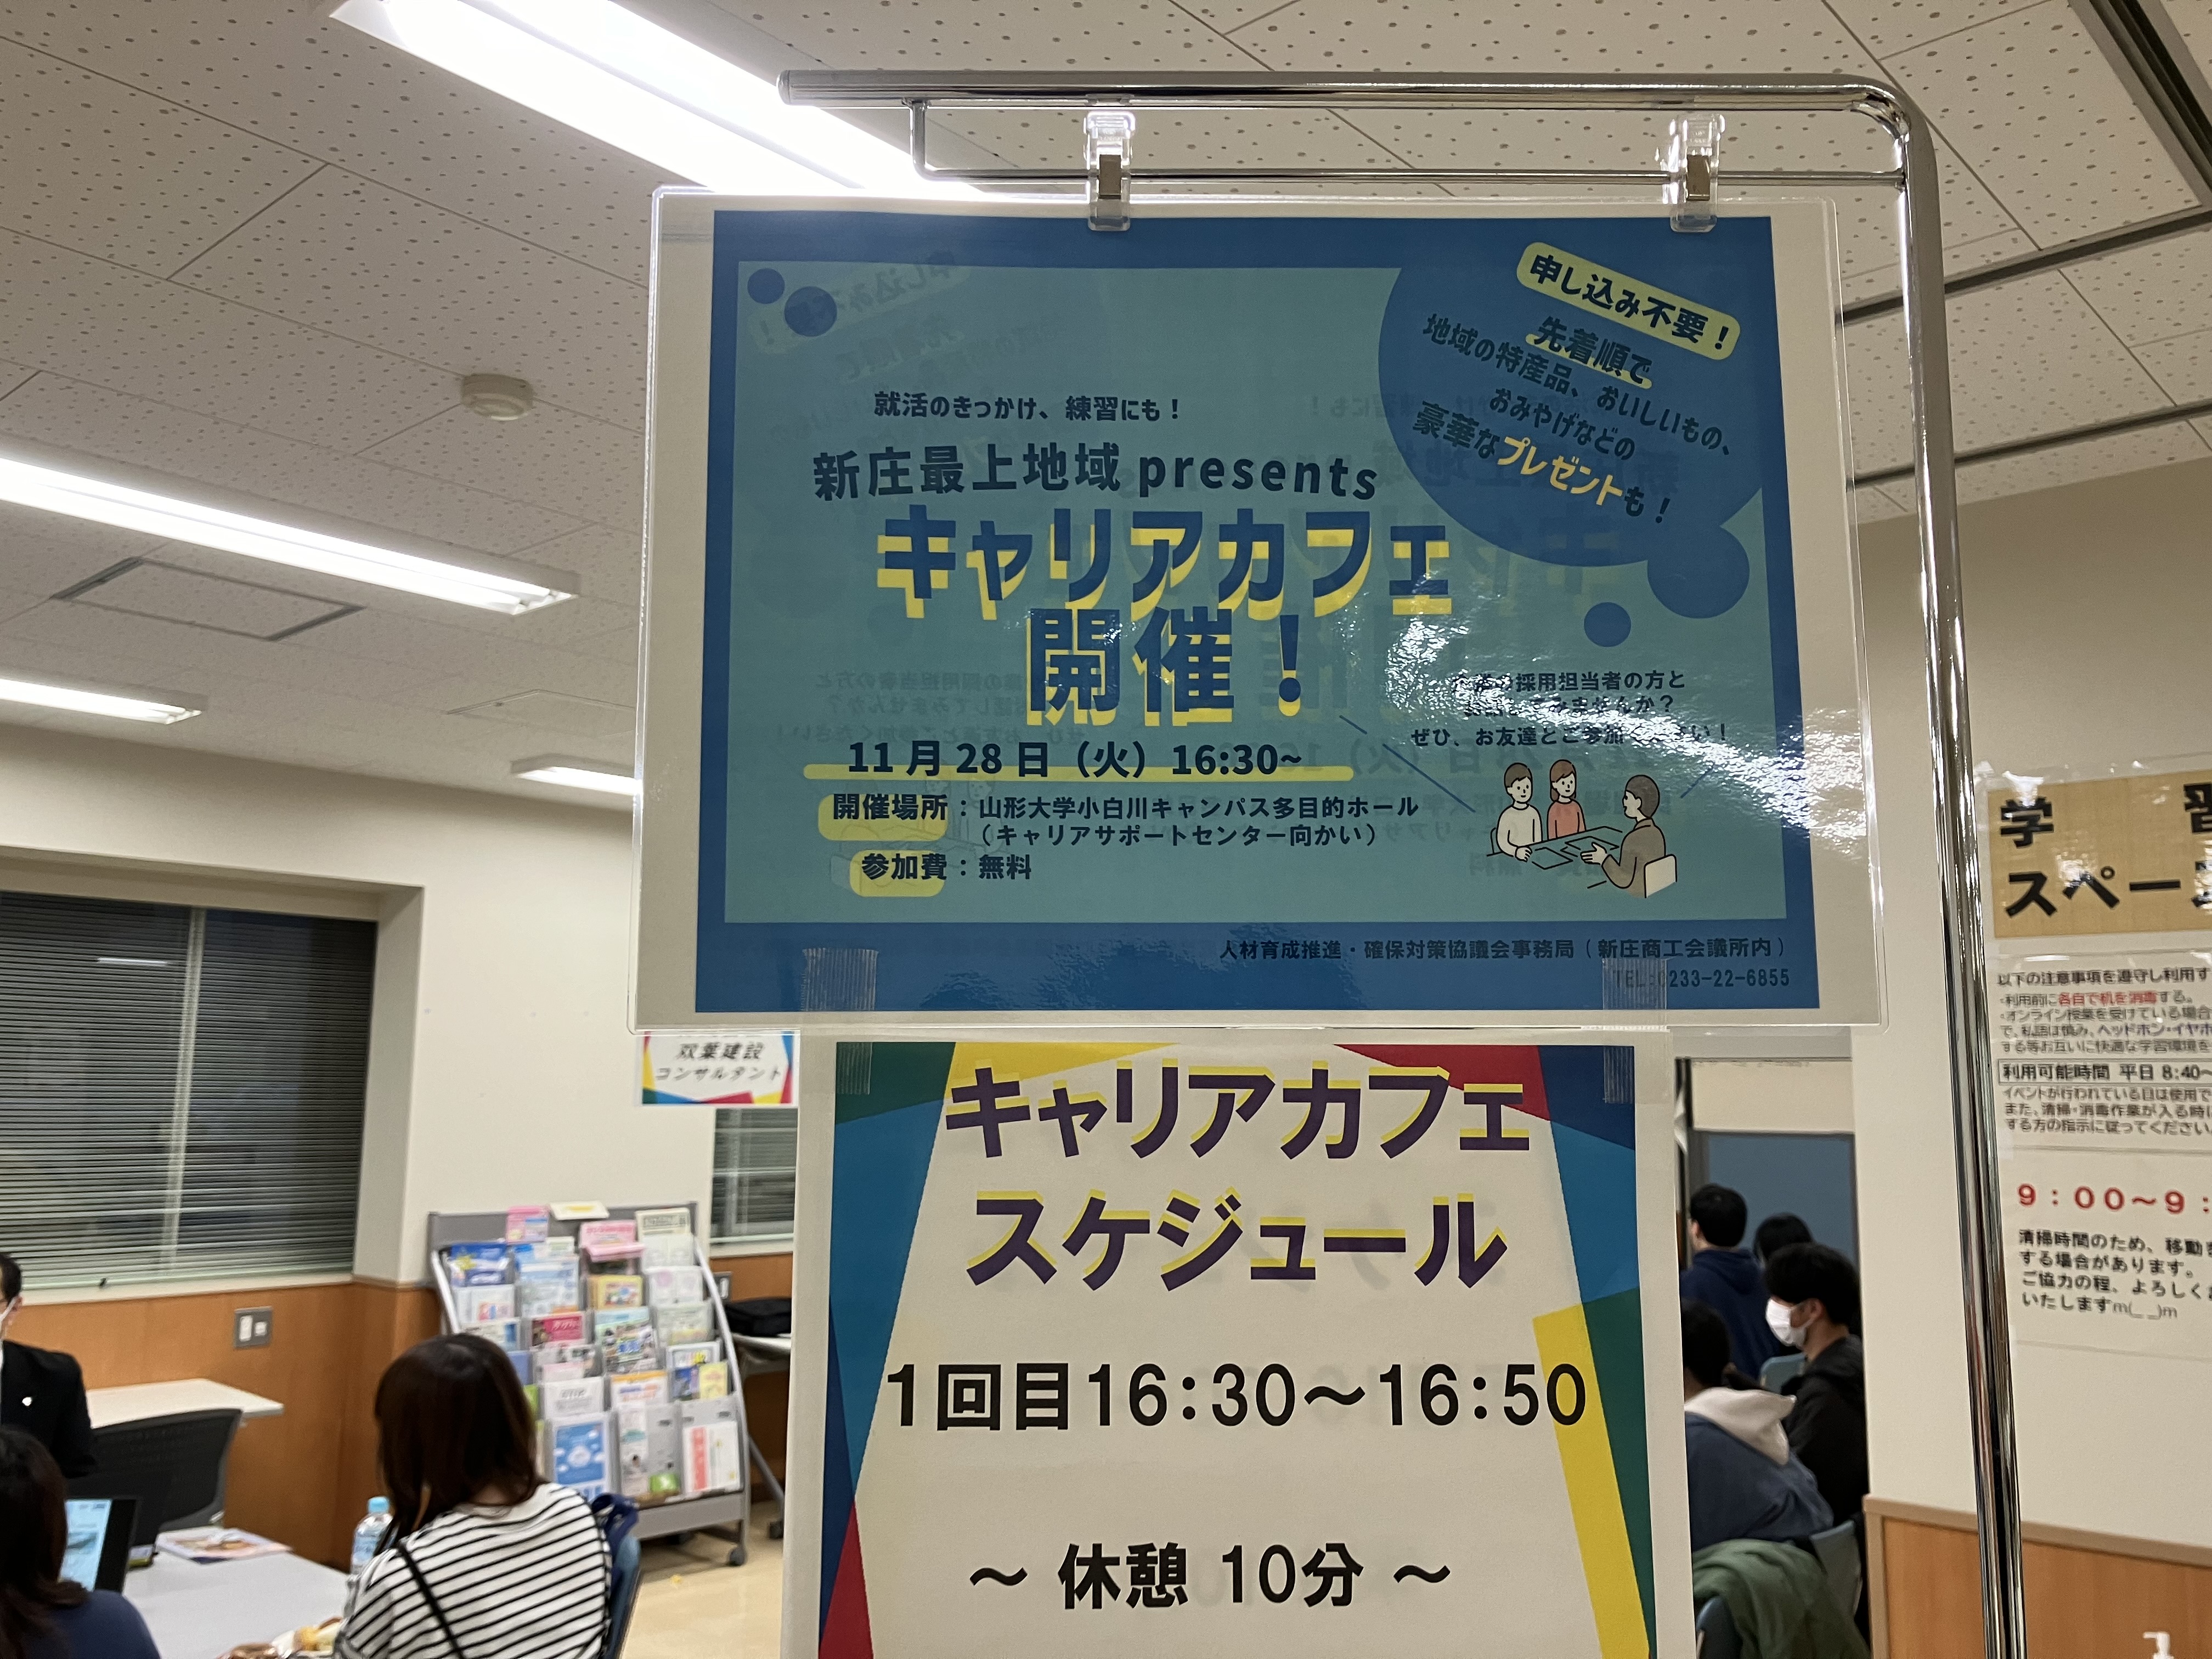 「新庄最上地域presentsキャリアカフェ」は今回初めての開催！の画像